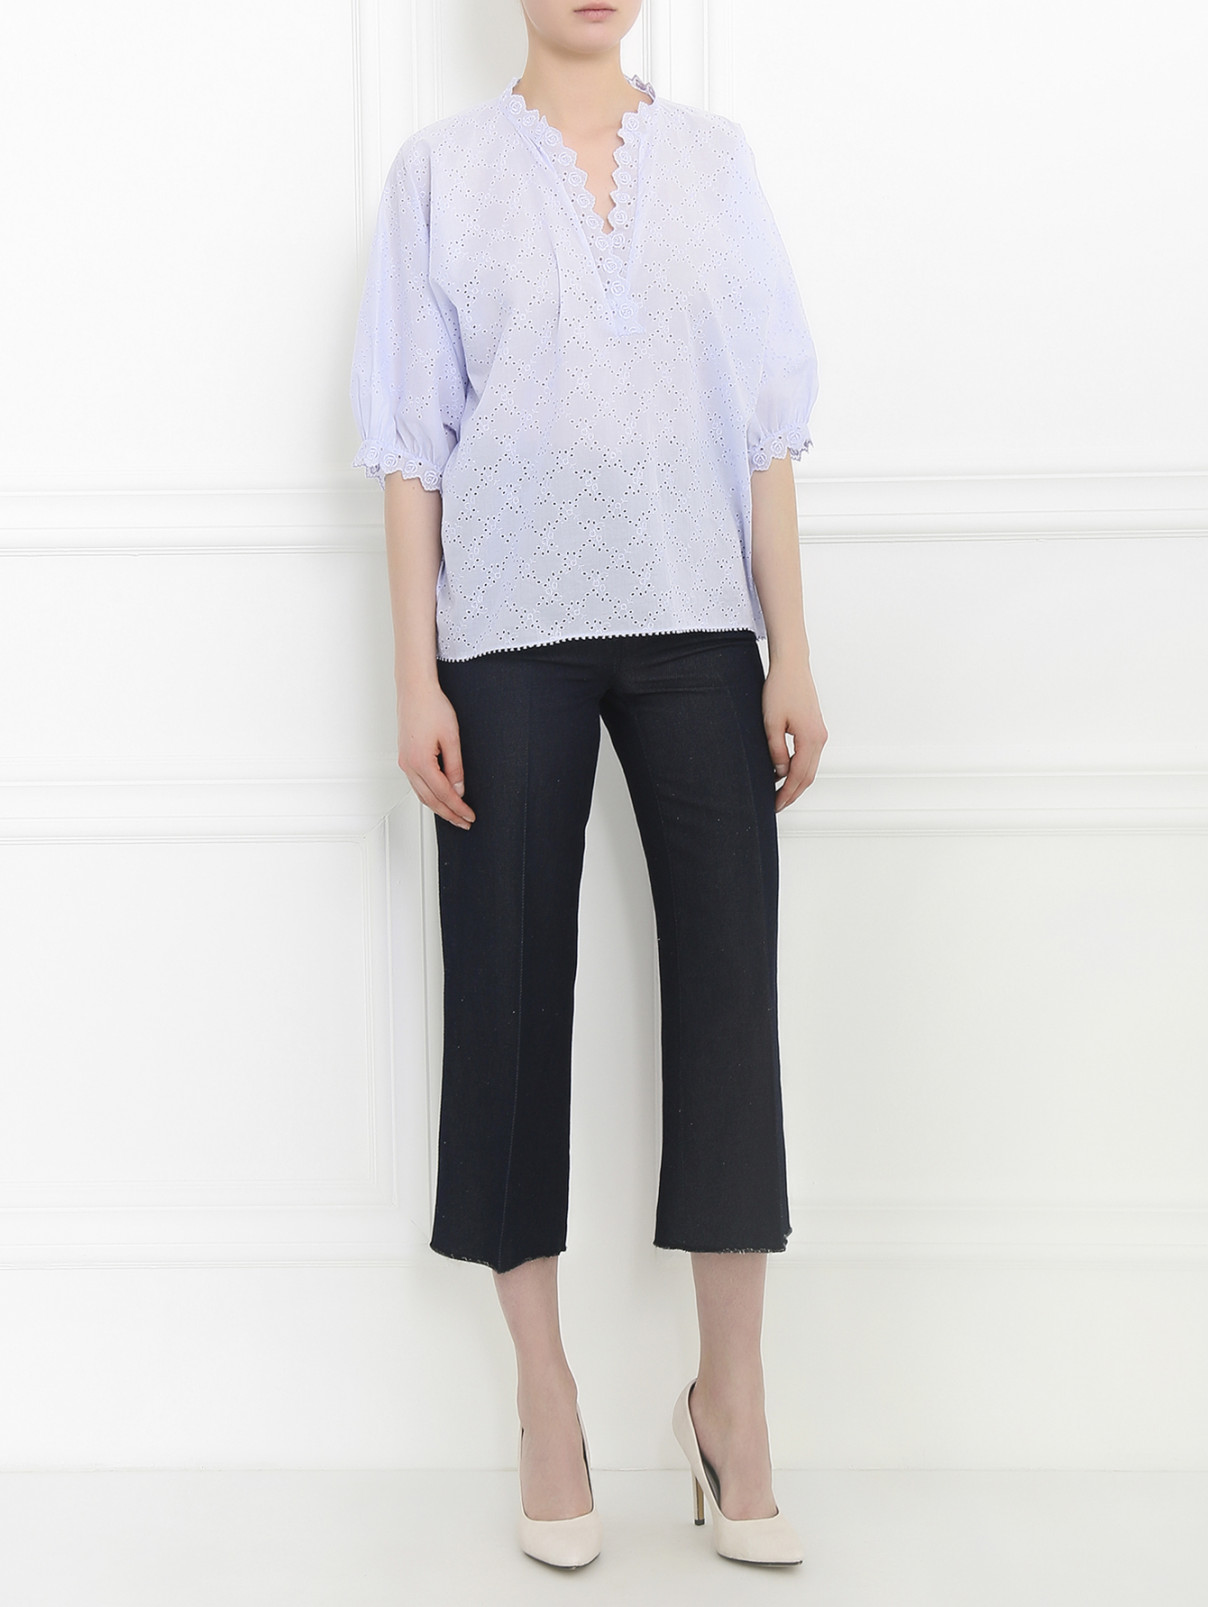 Укороченные брюки из хлопка и льна Dondup  –  Модель Общий вид  – Цвет:  Синий